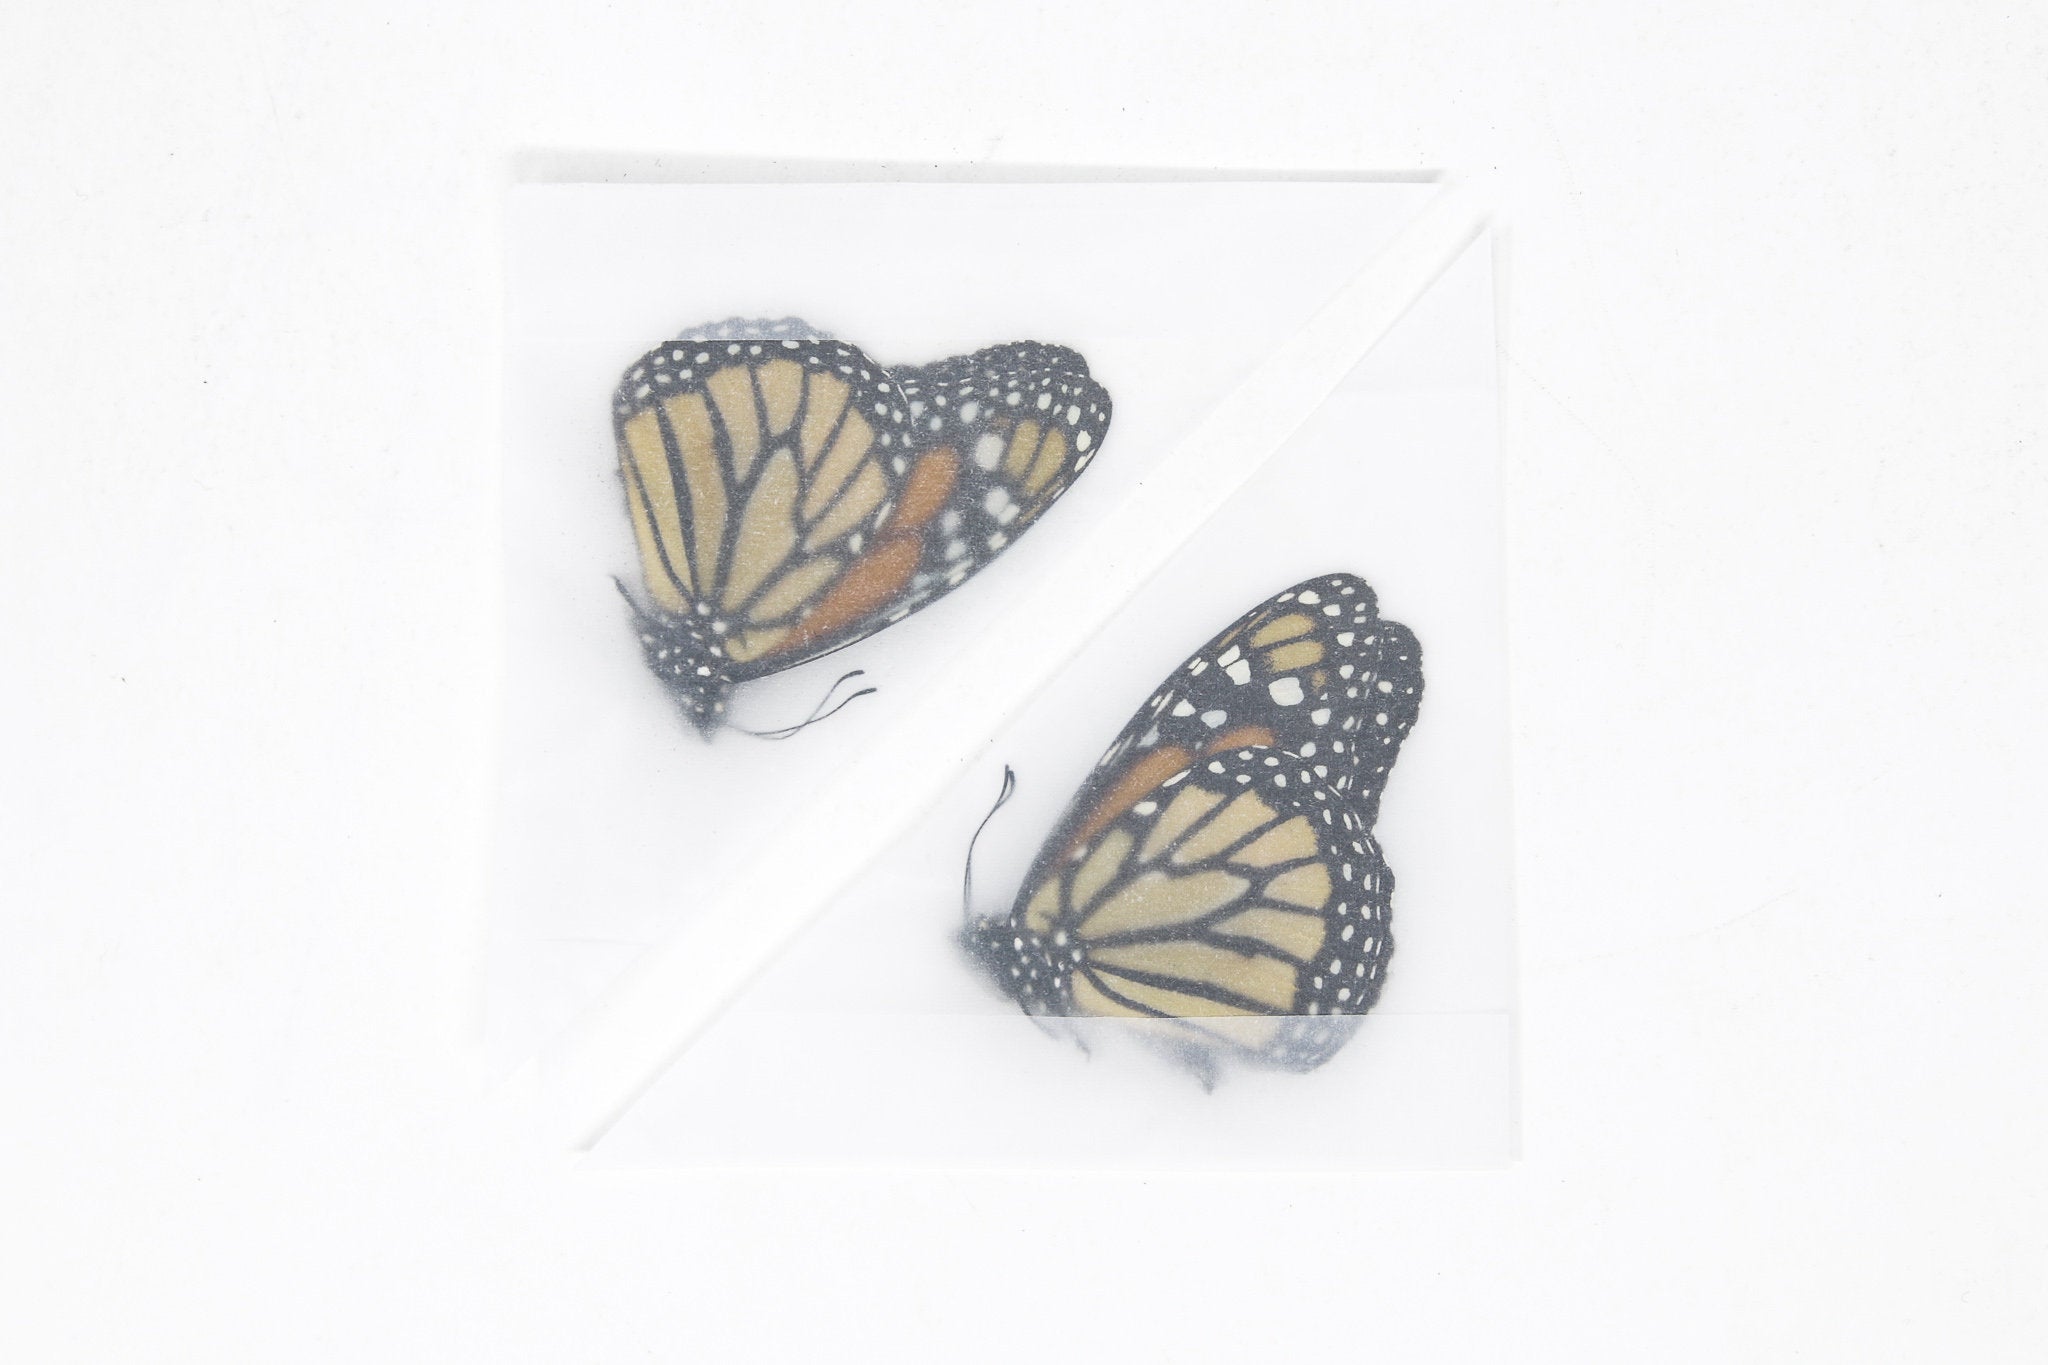 Monarch Butterfly - Danaus plexippus - NatureWorks